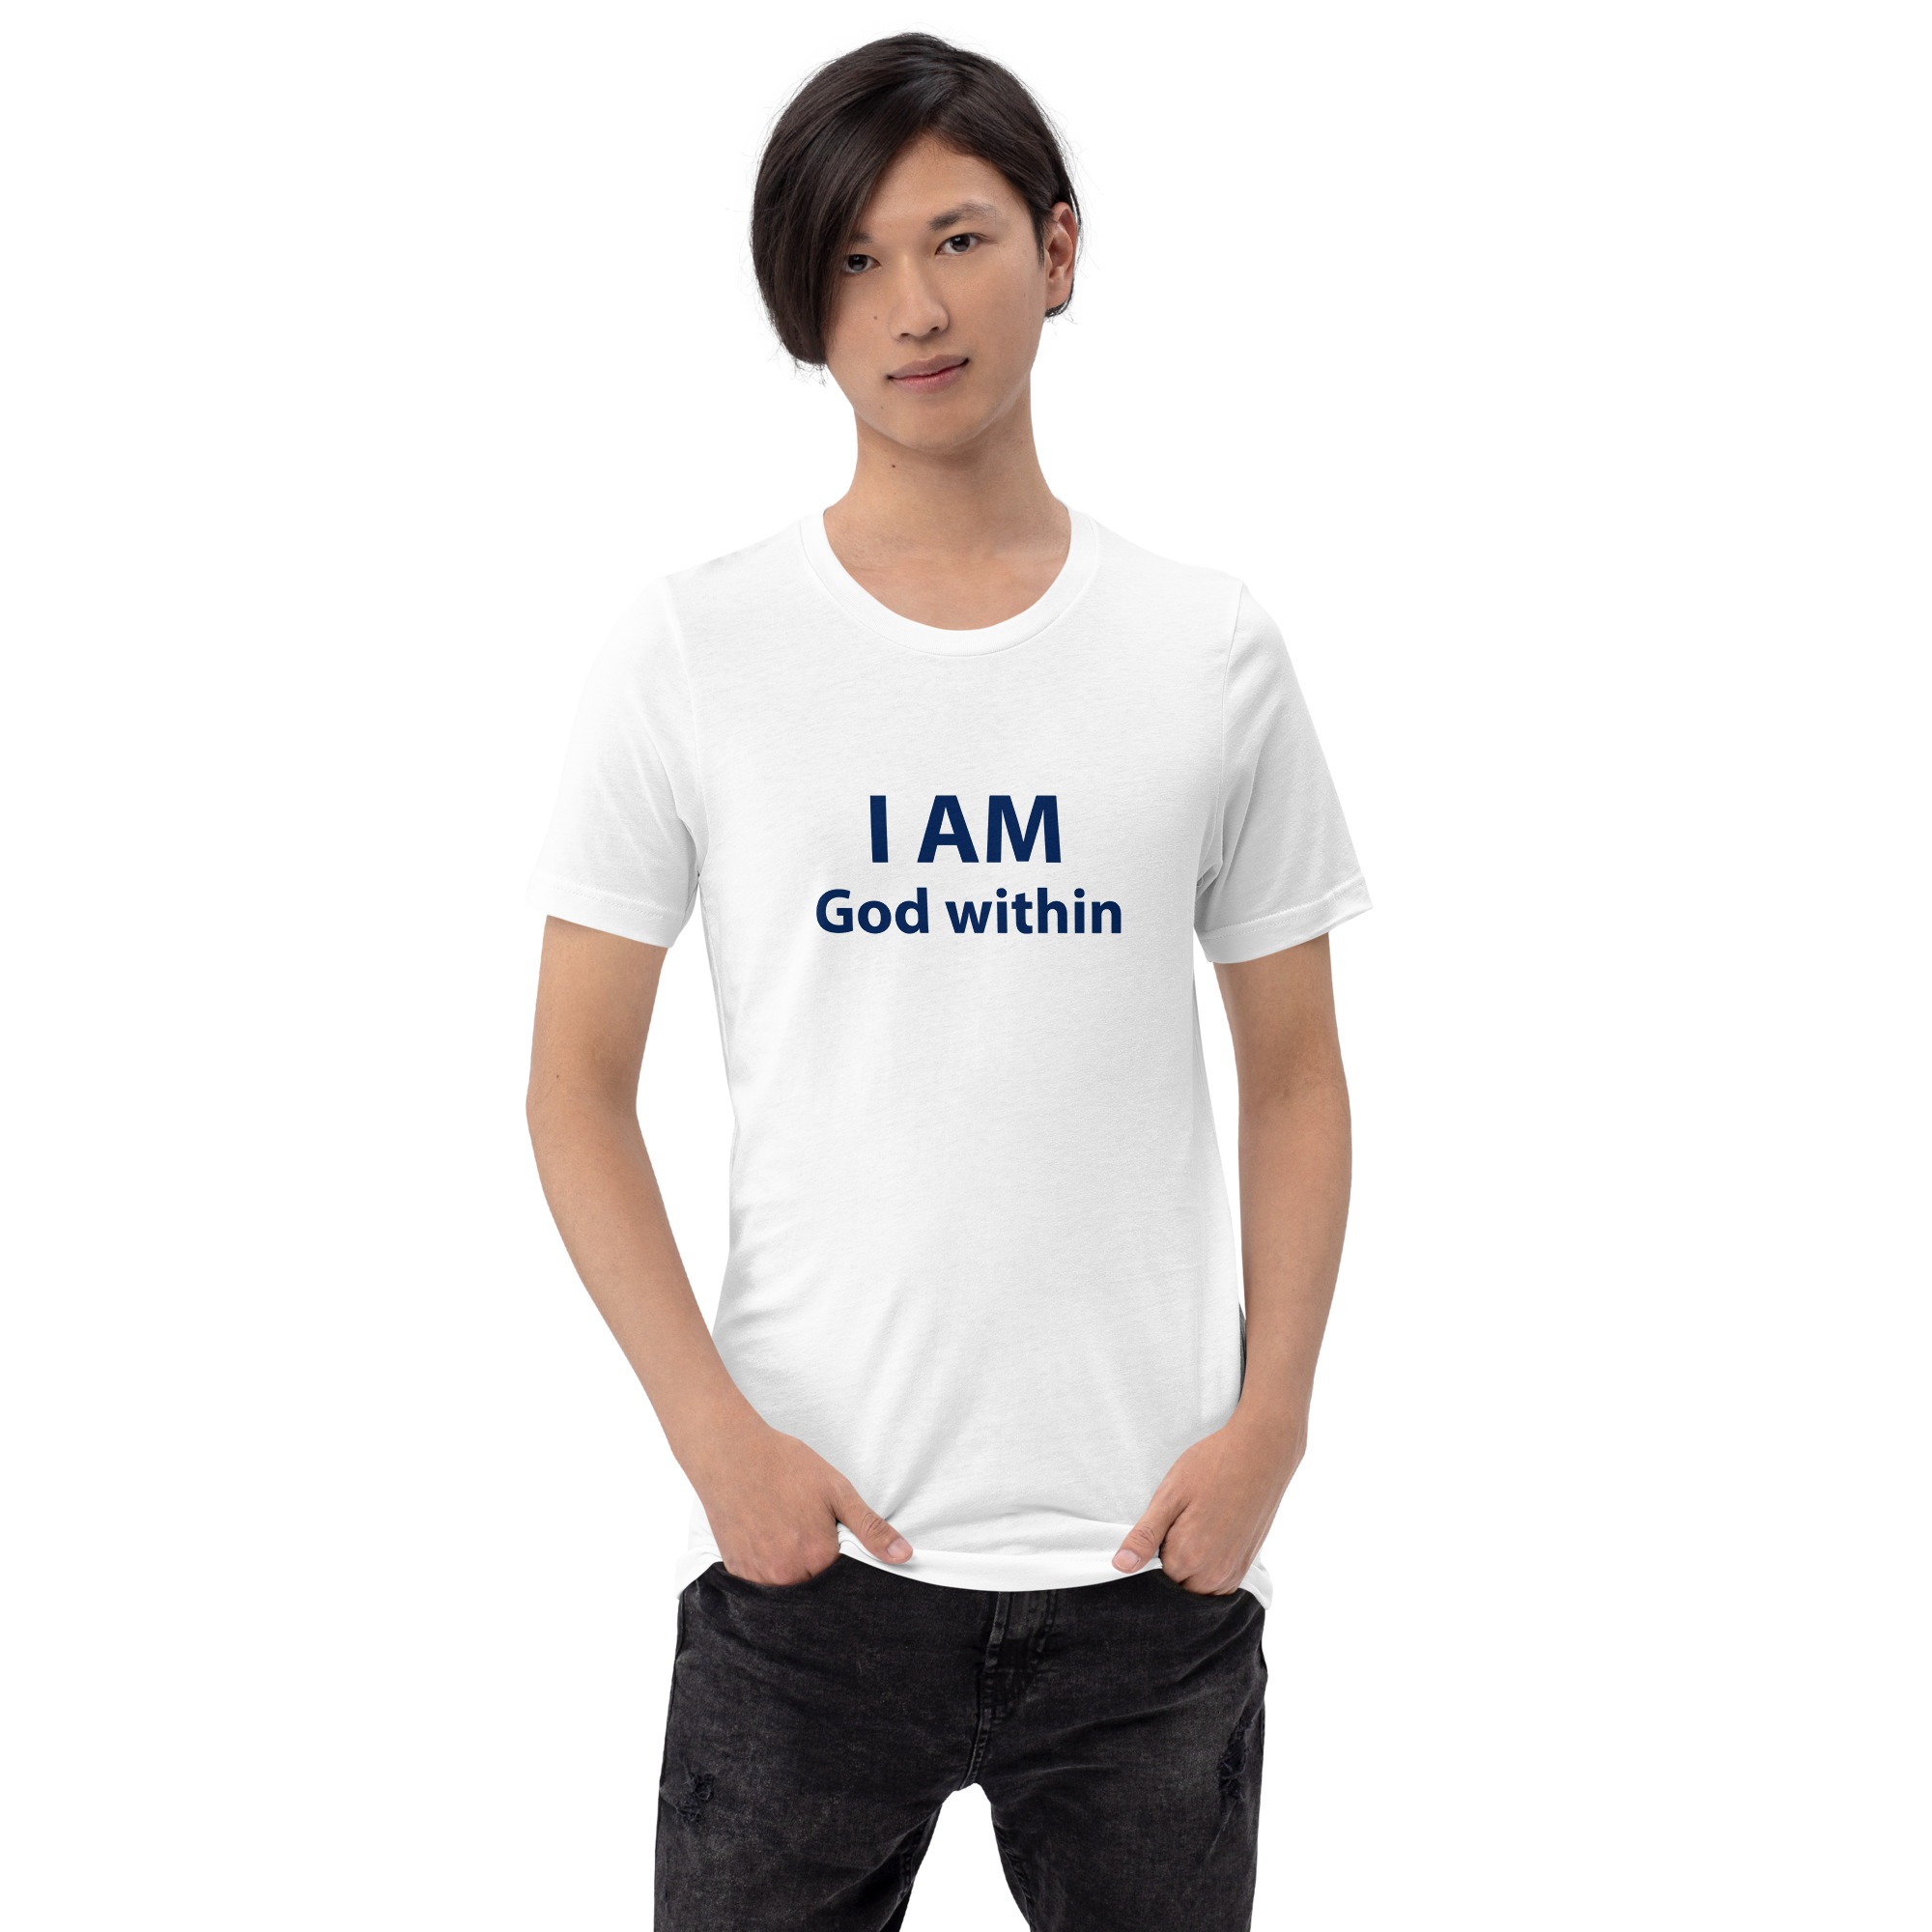 I AM God Within Tshirt